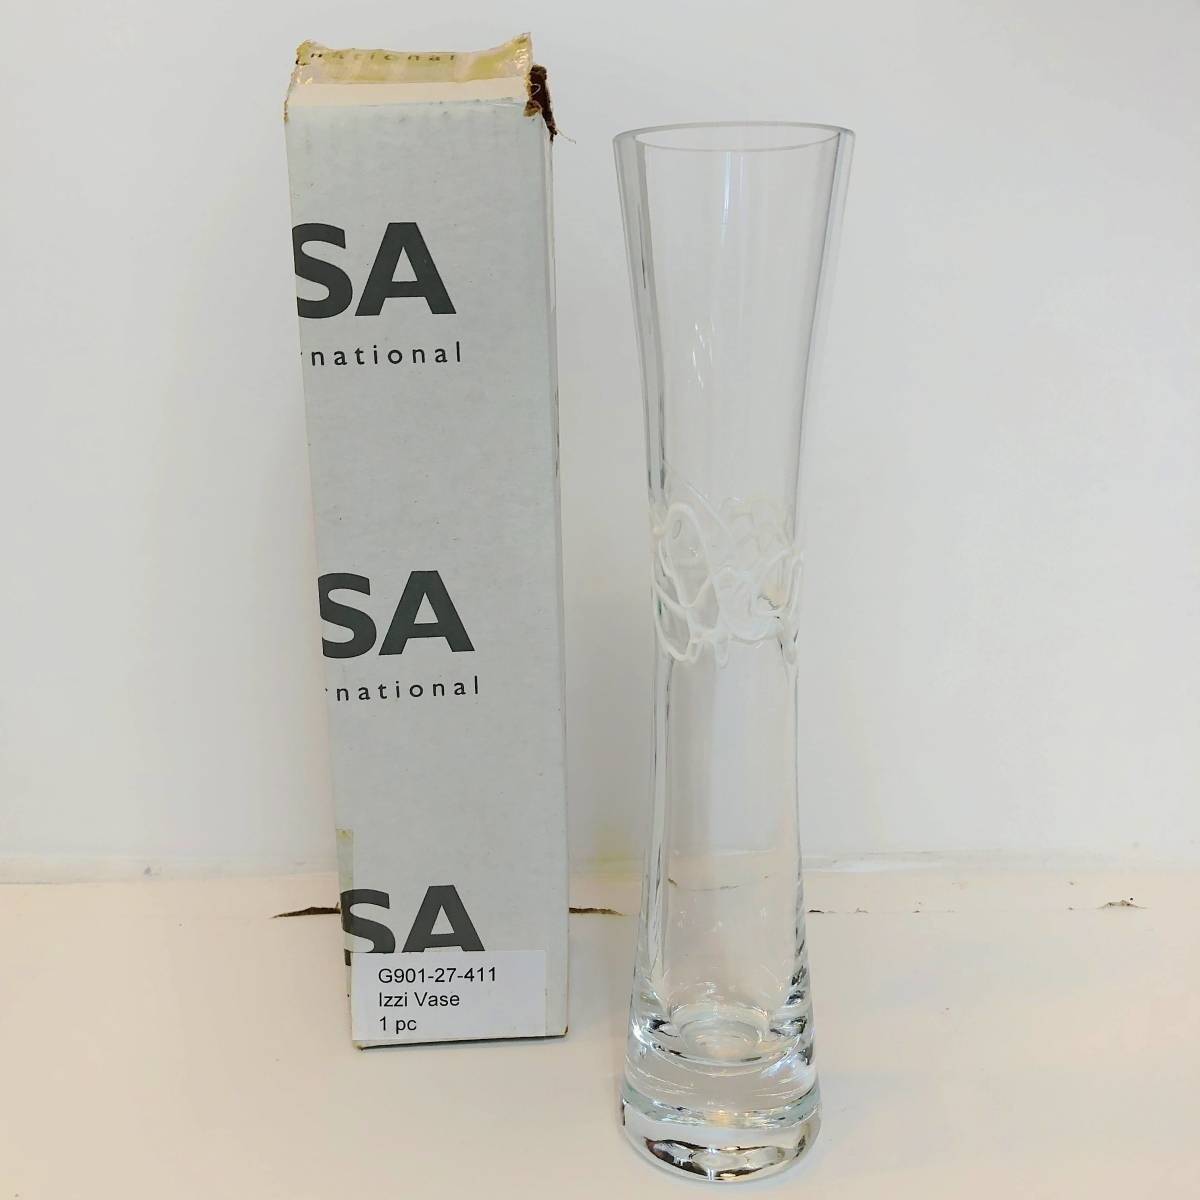  new goods 4. white LSA international flower base vase hand made glass white Izzi Vase 27cm Poland made G901-27